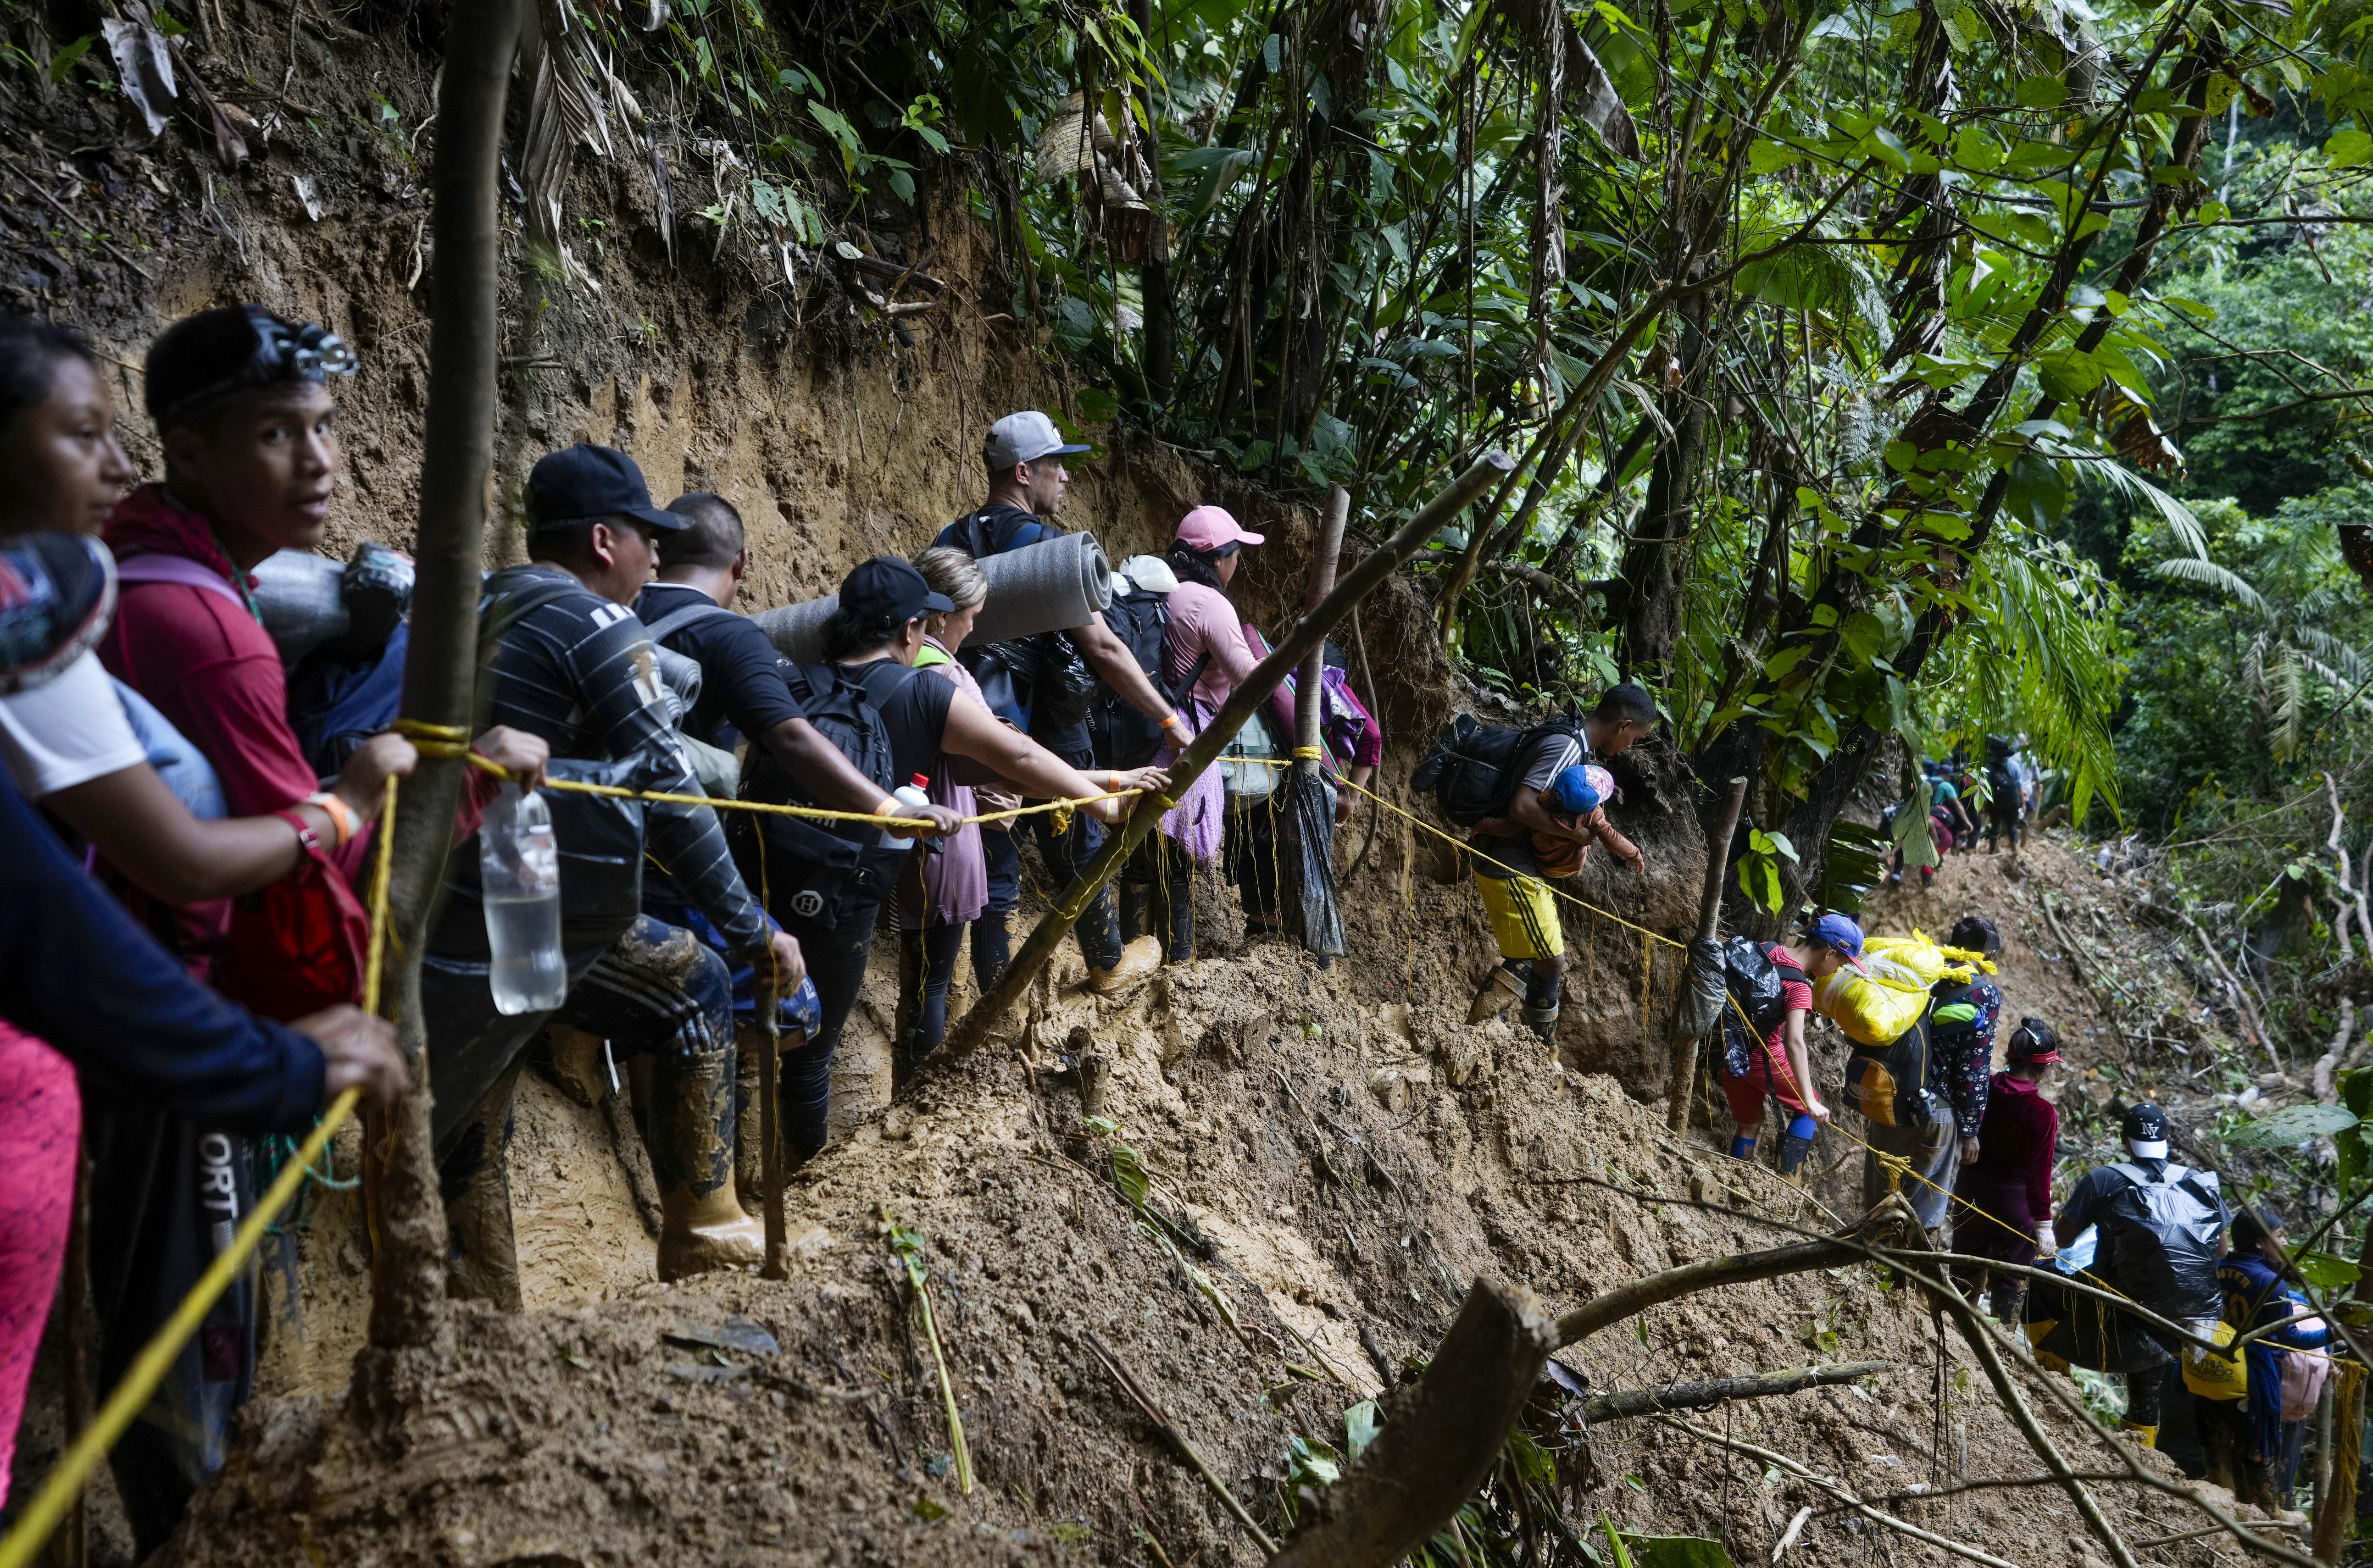 Casi 5 mil niños cruzaron el tapón del Darién entre Colombia y Panamá en enero del 2023, aseguró Unicef